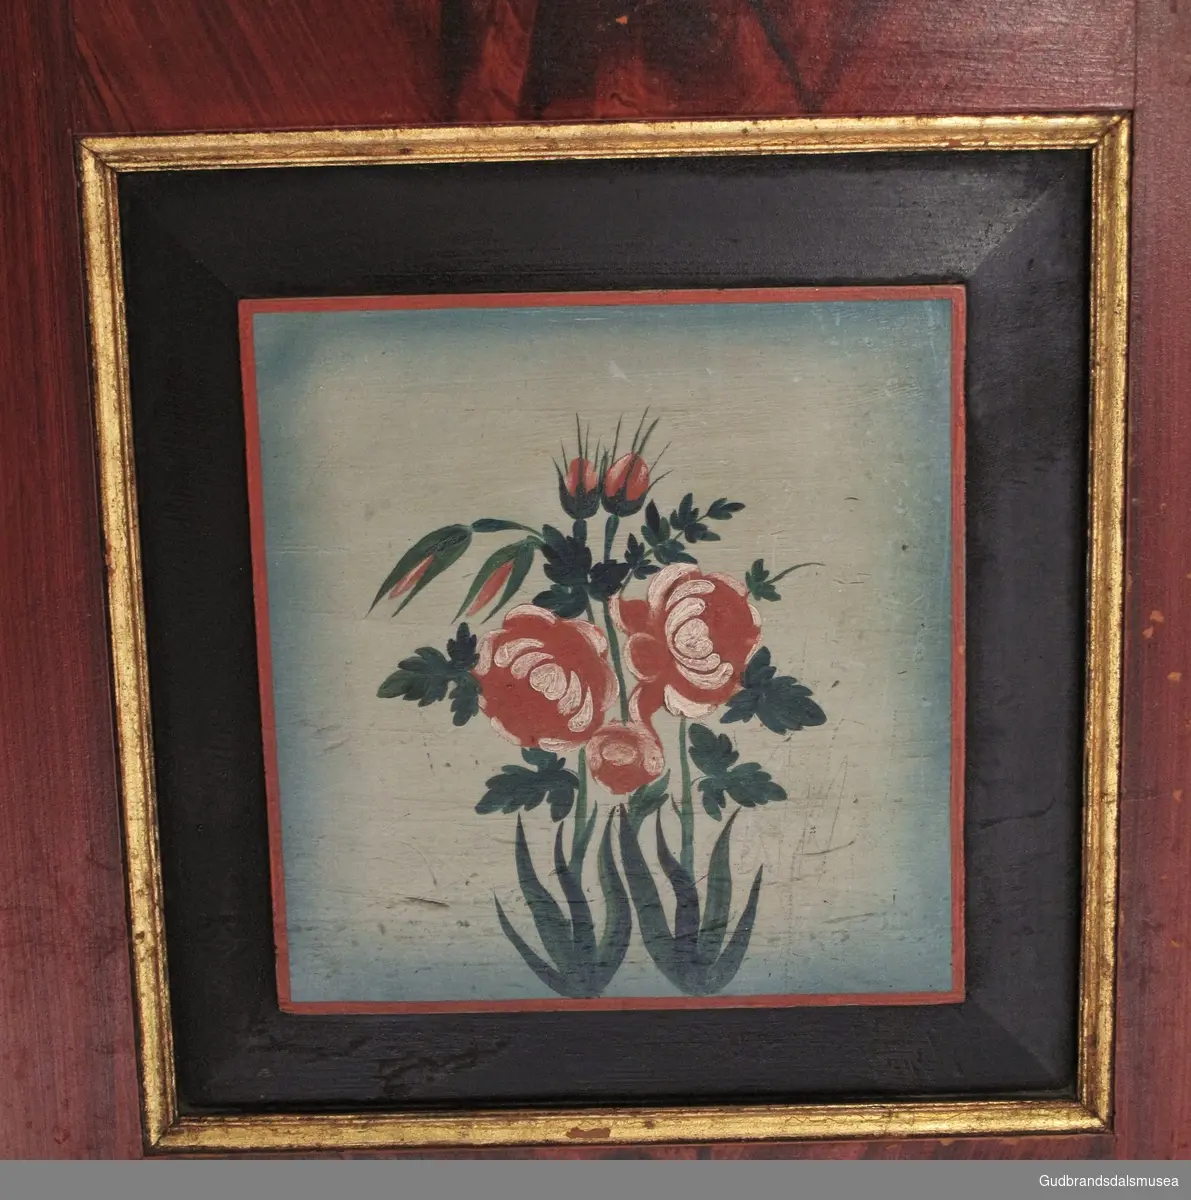 Naturalistiske roser røde og hvite roser med gønnt bladverk, rammet inn med rød kant innerst etterfulgt av en bred svart kant og ytterst en kant i gull. Bakgrunn lys blå.